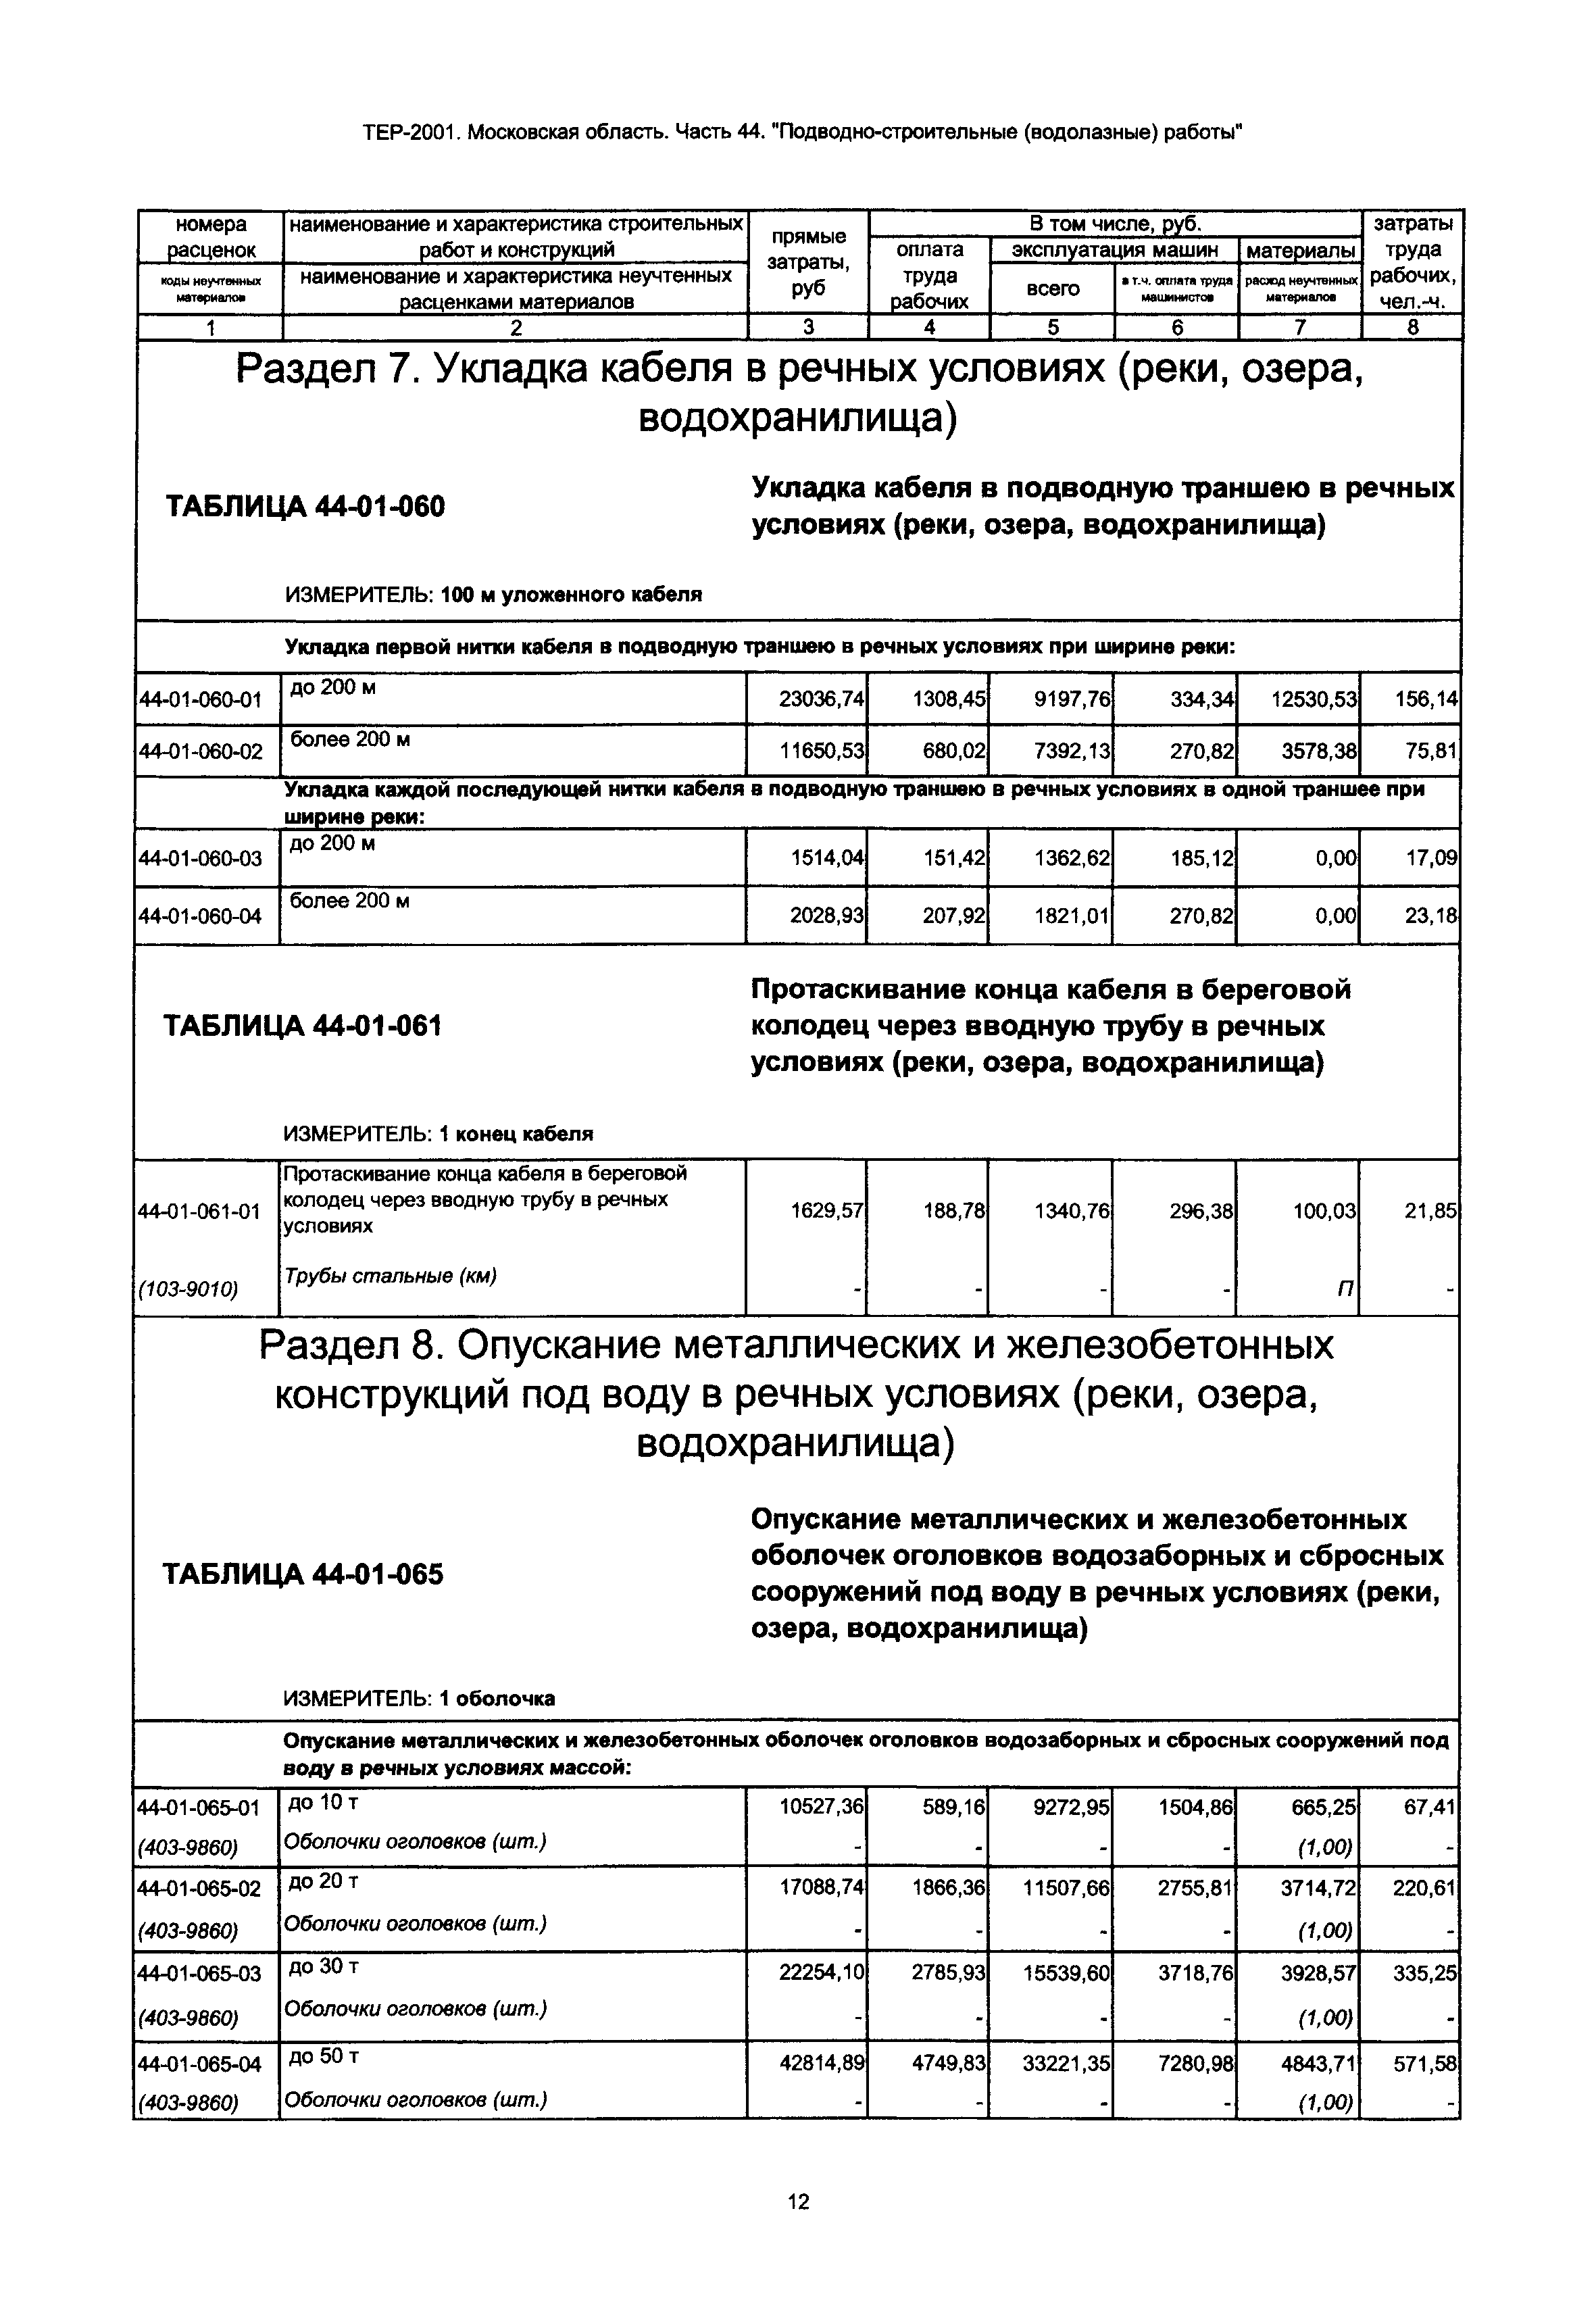 ТЕР 44-2001 Московской области